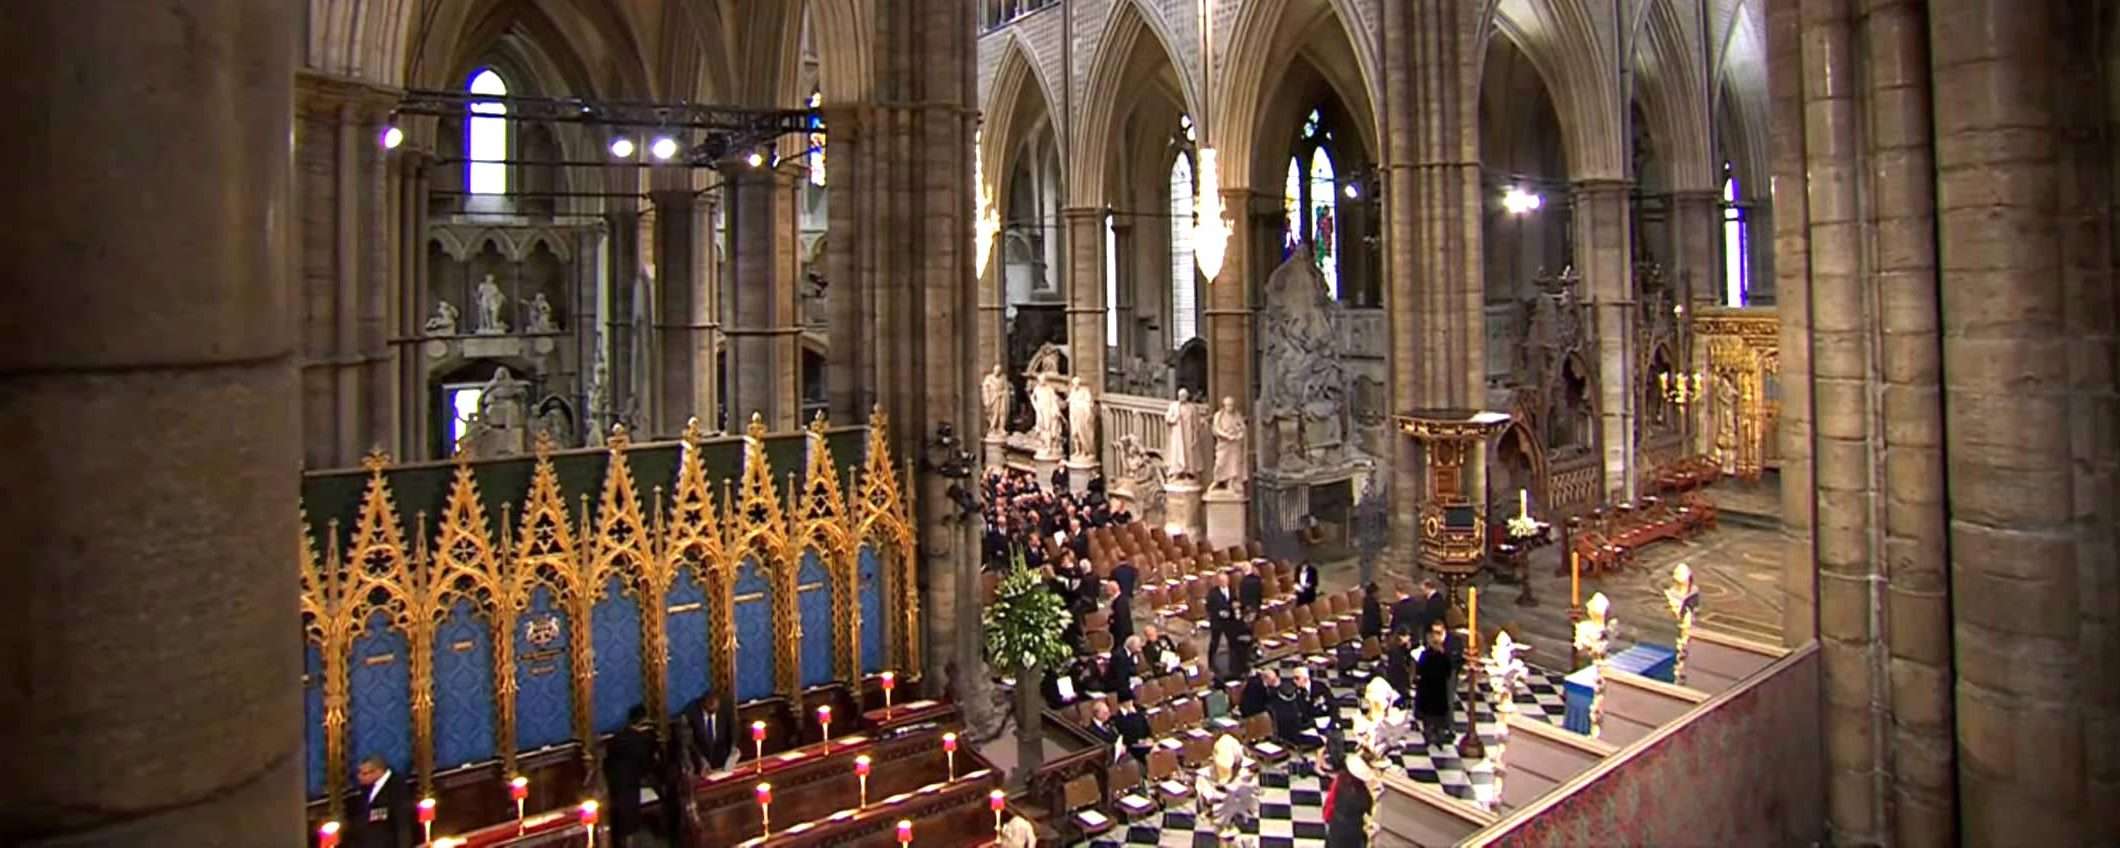 Il funerale della regina Elisabetta II in streaming